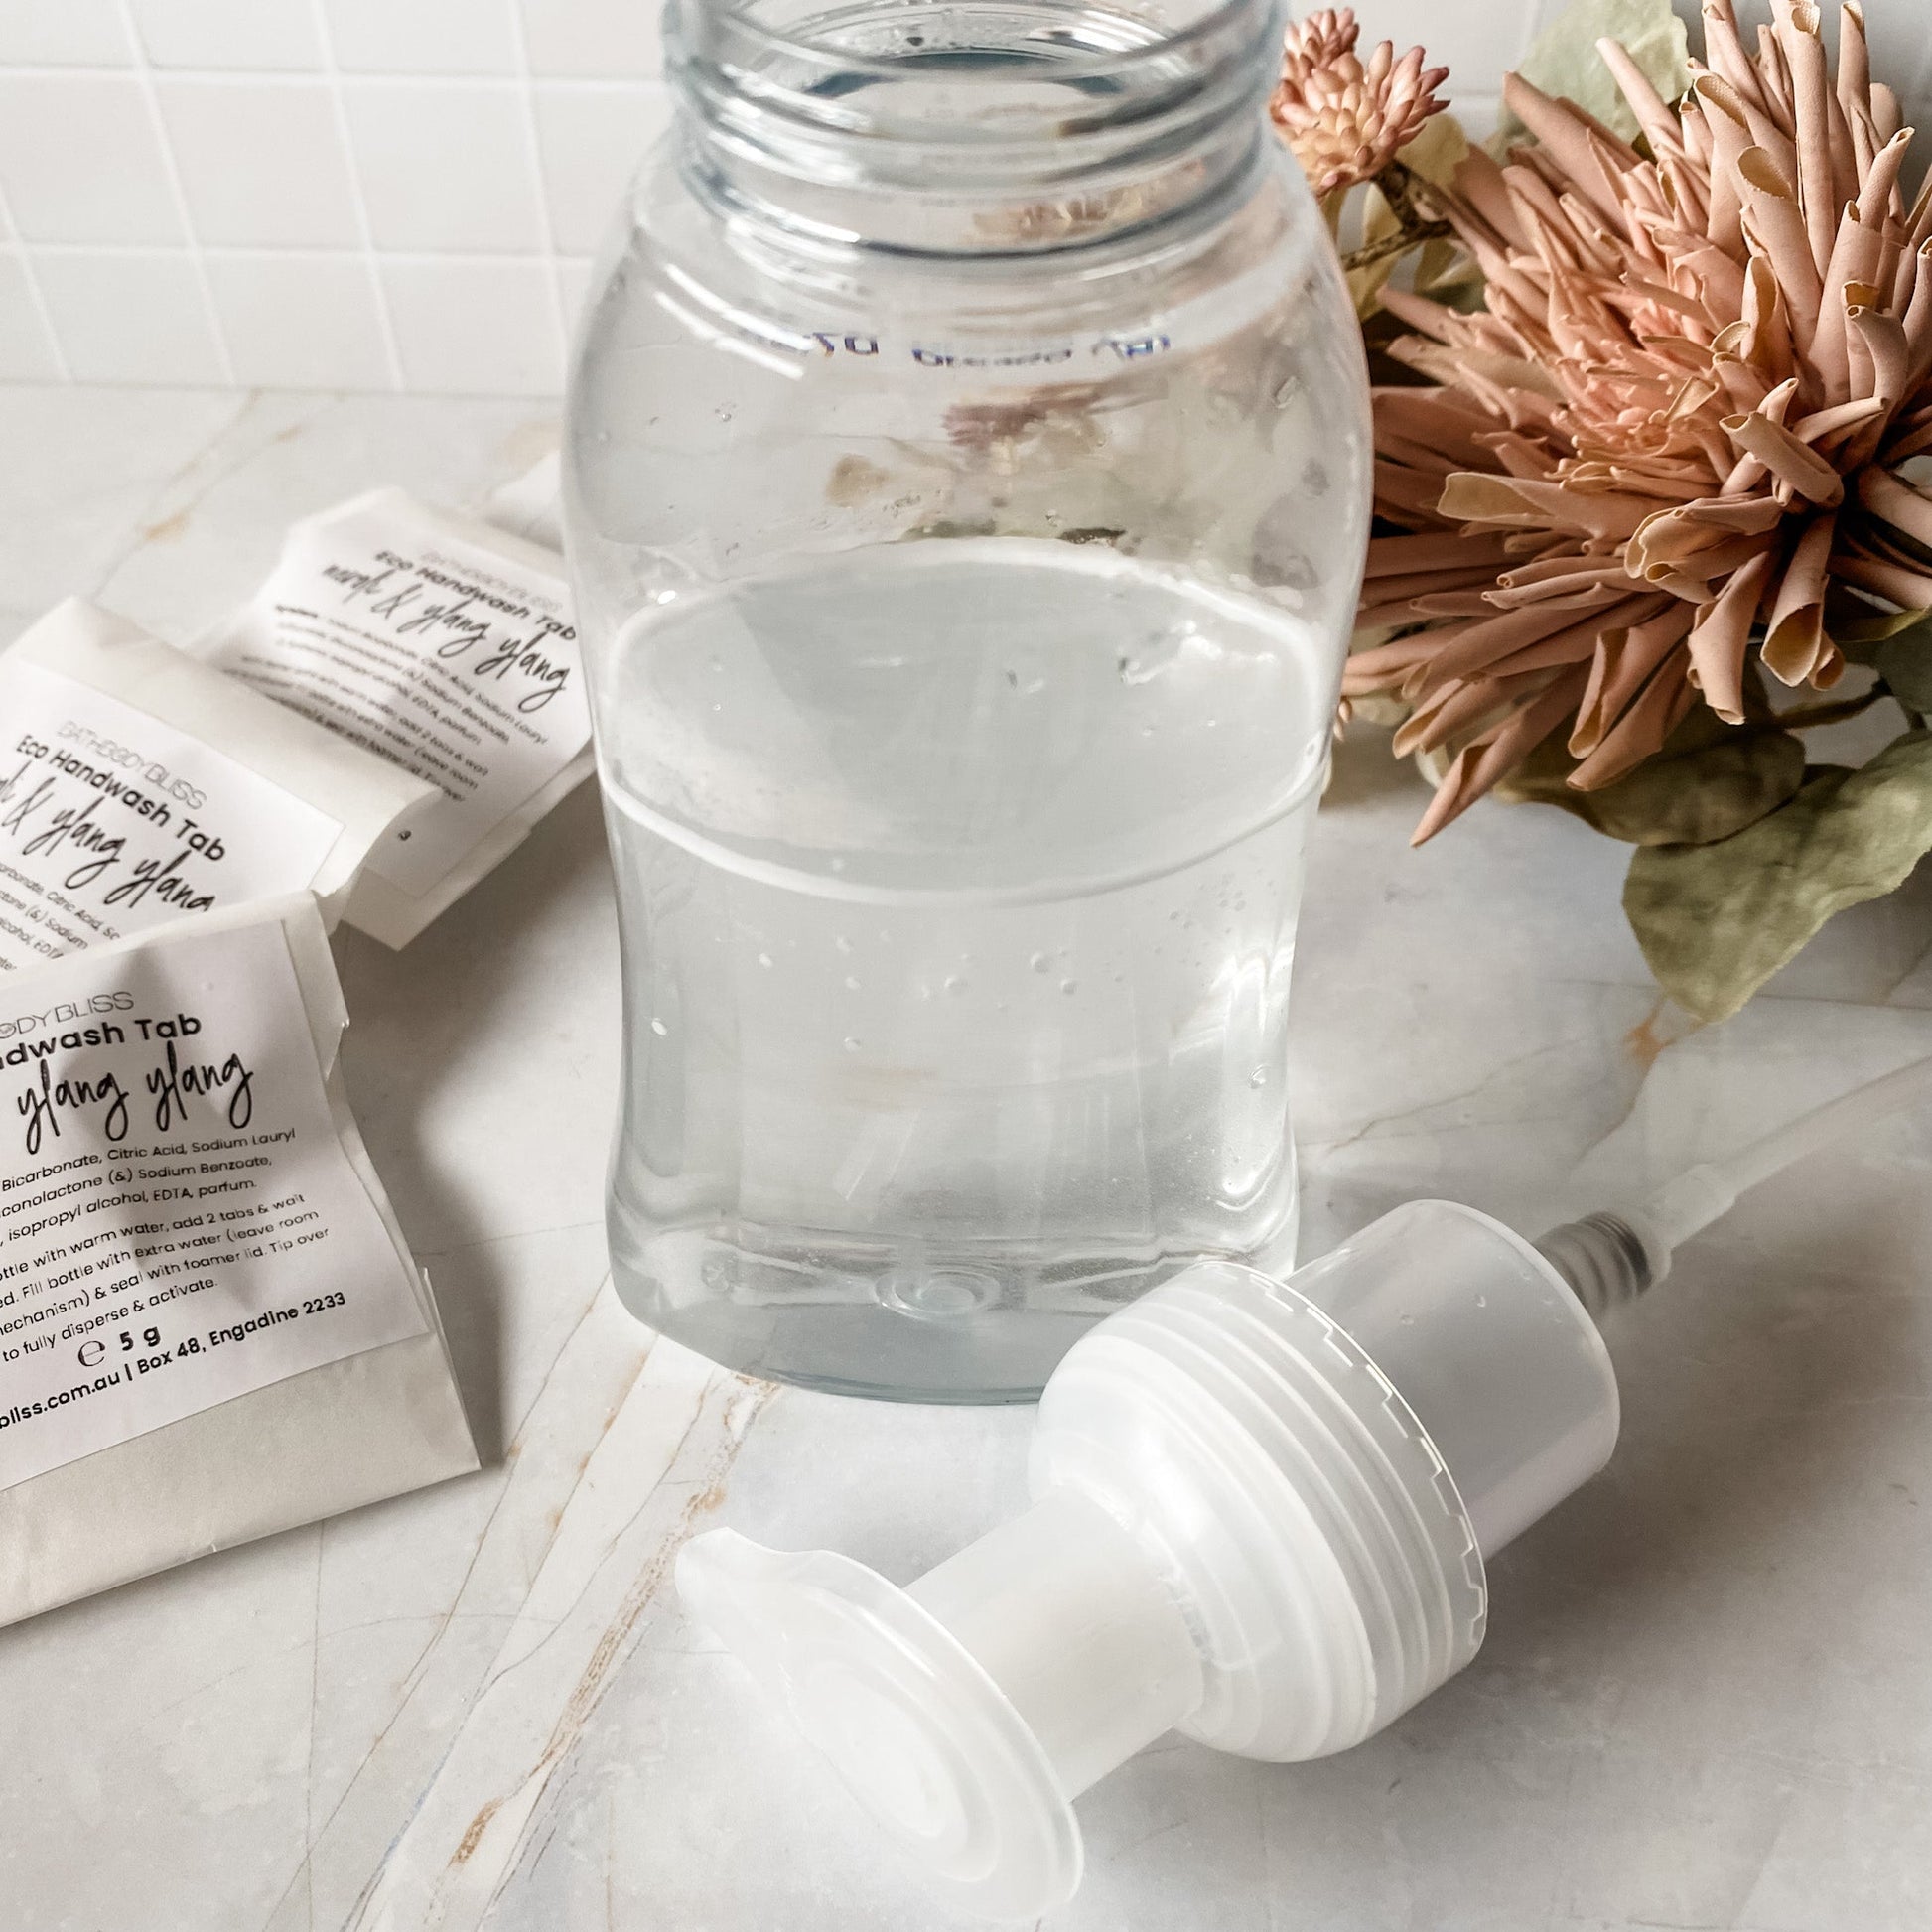 half-filled-foamer-bottle-ready-to-add-handmade-eco-foaming-handwash-tabs